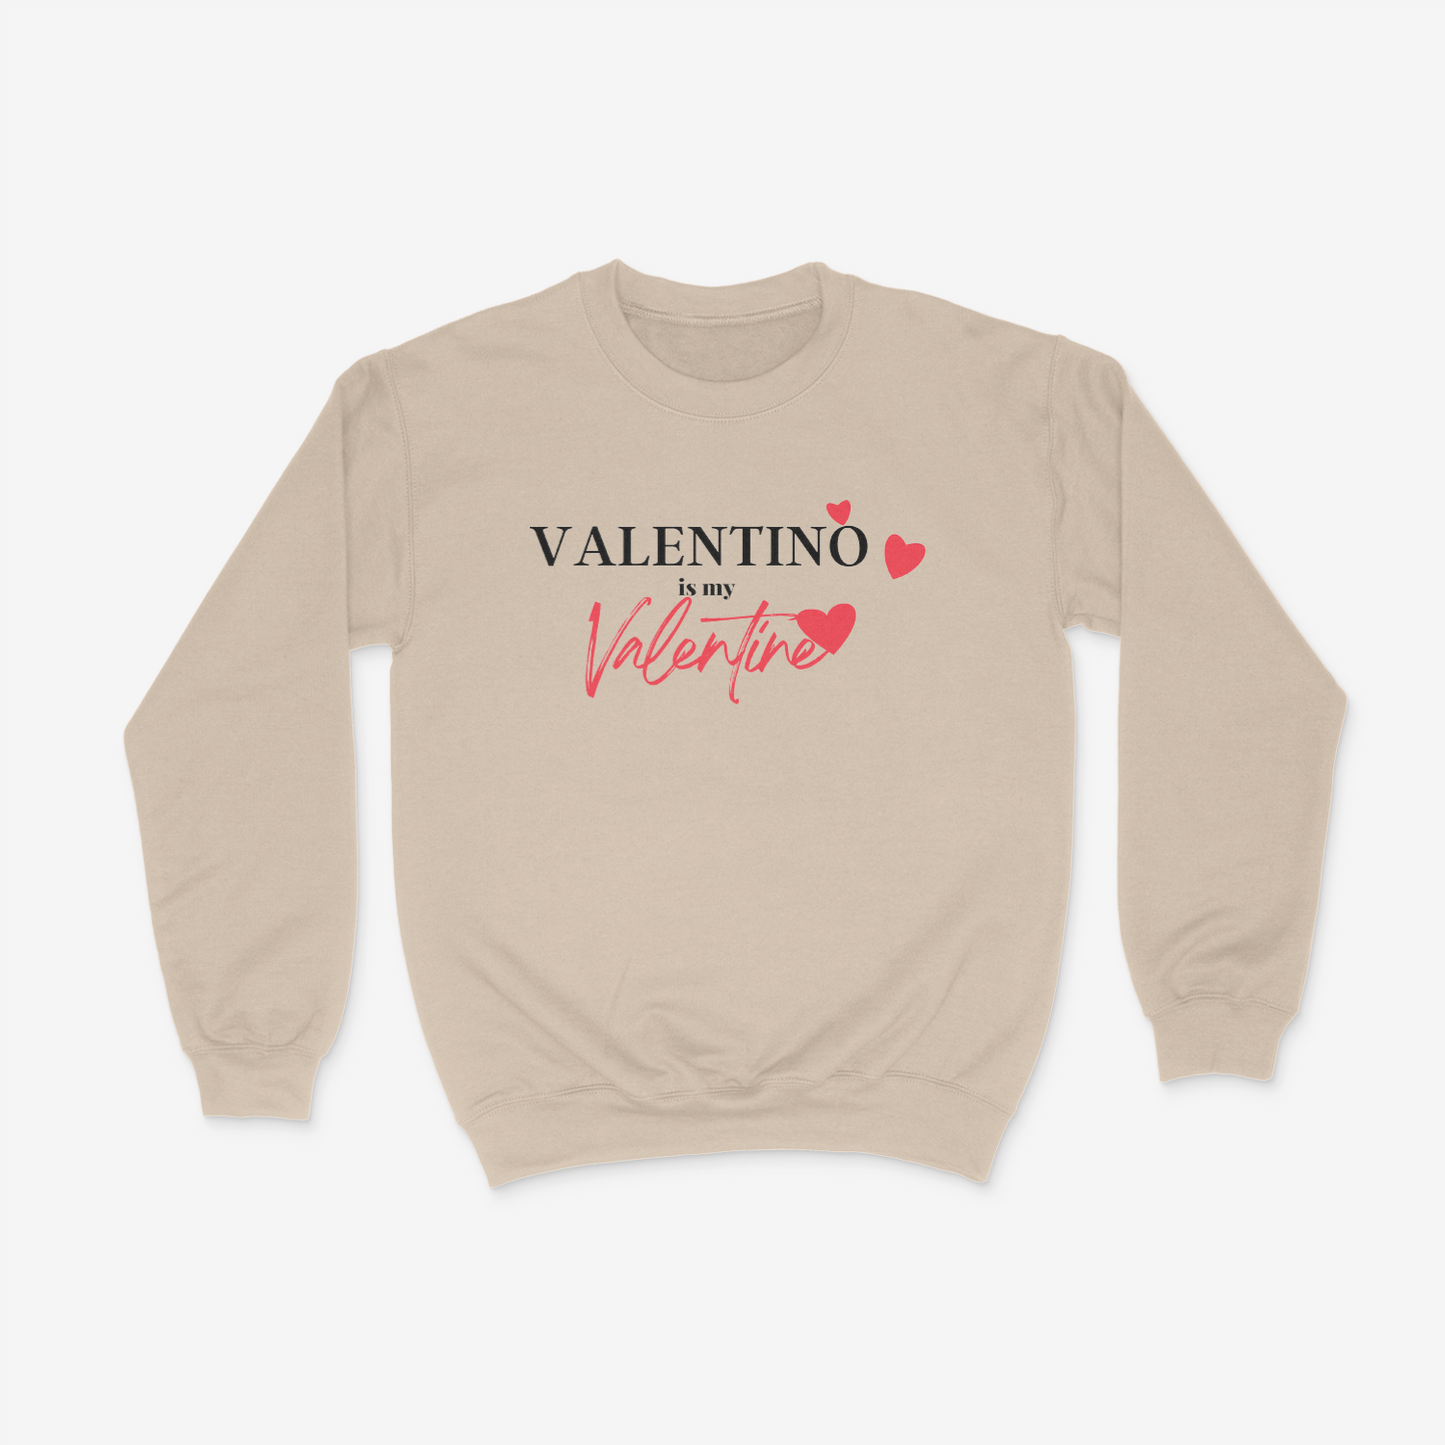 Valentino is my Valentine